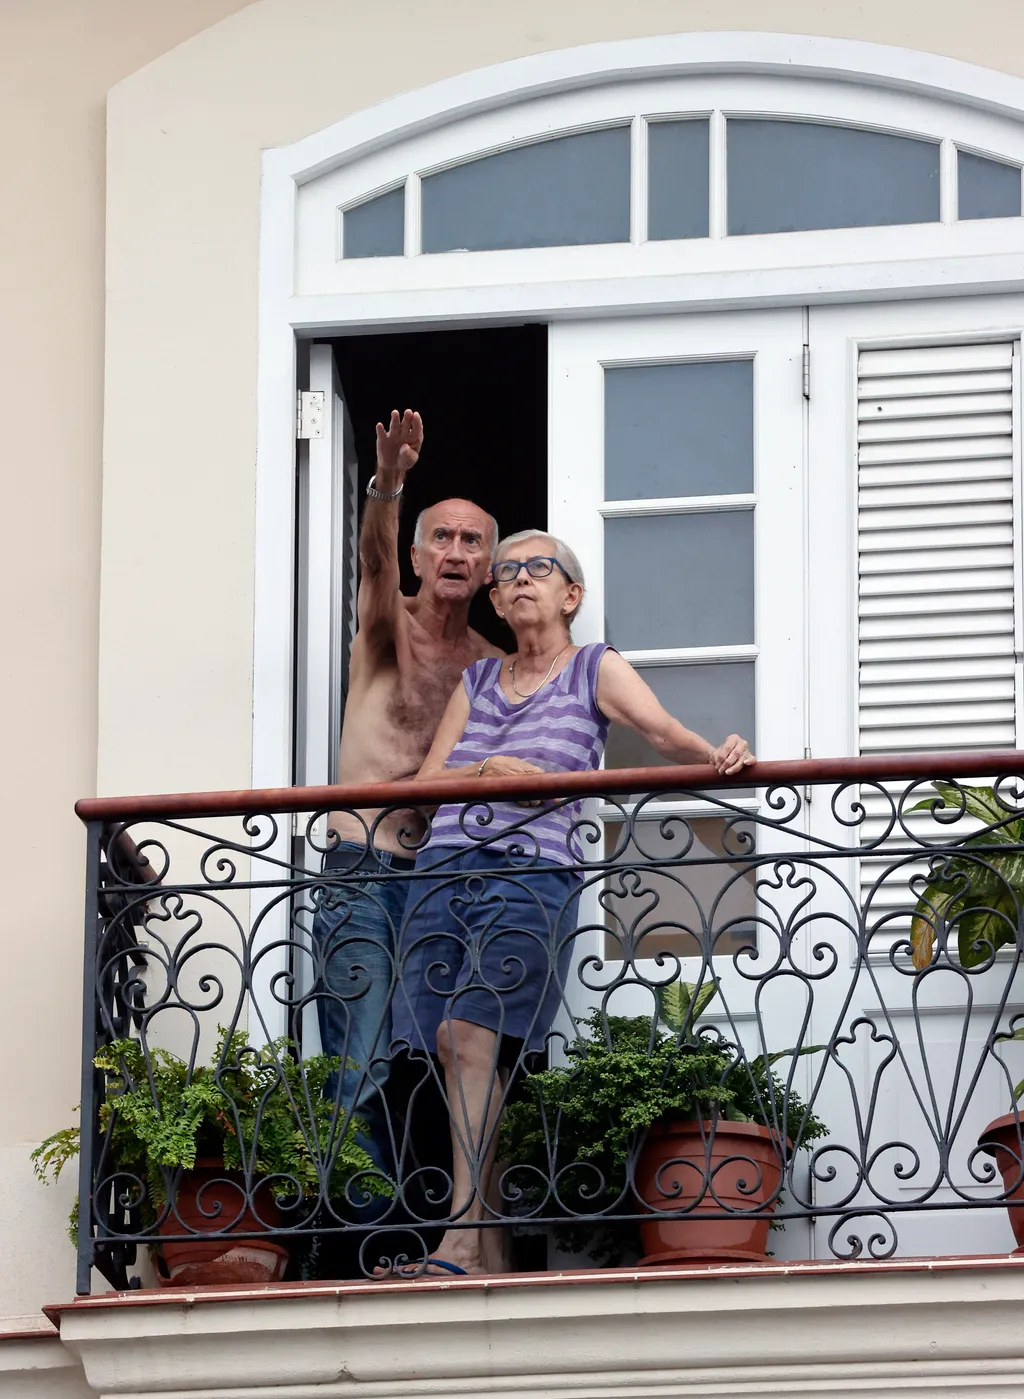 Épületomlás Kuba mentés  meghalt két tűzoltó 